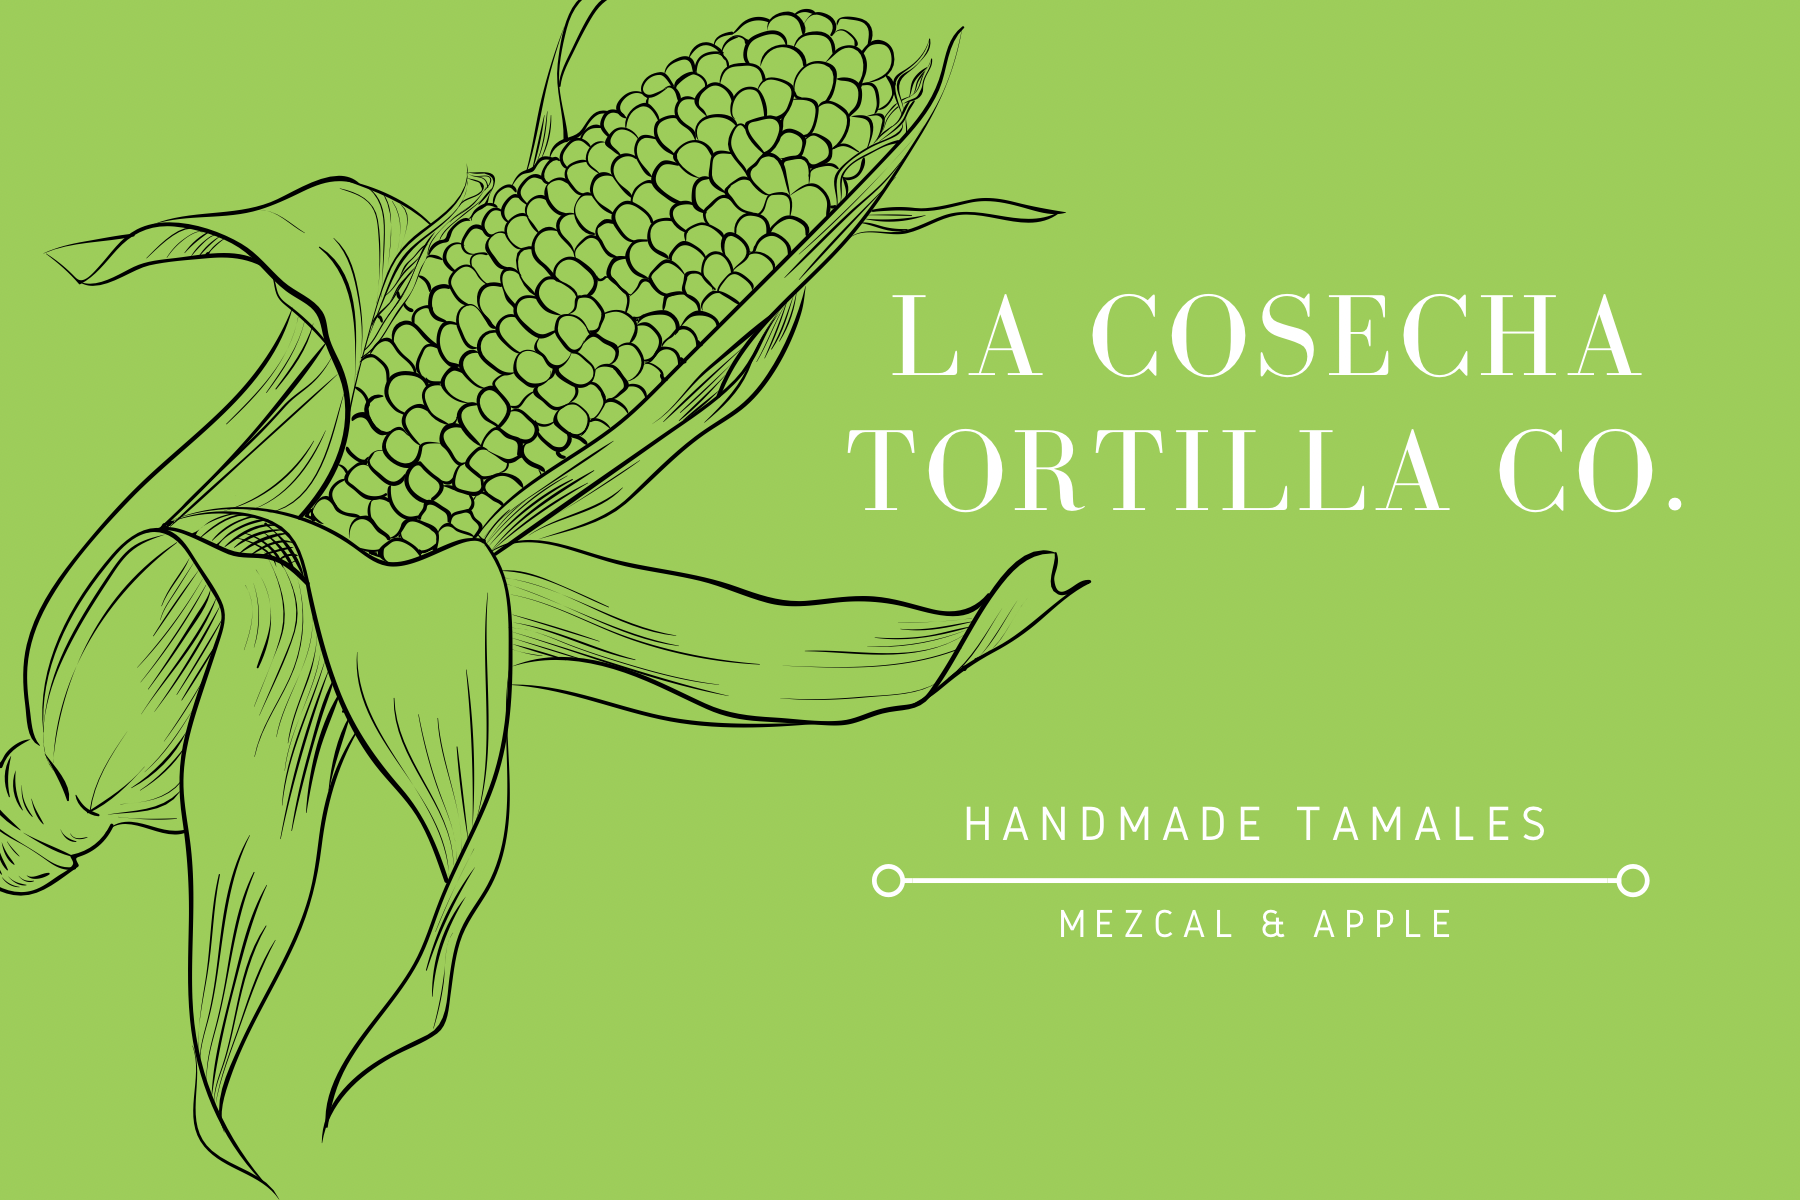 Mezcal & Apple Tamales